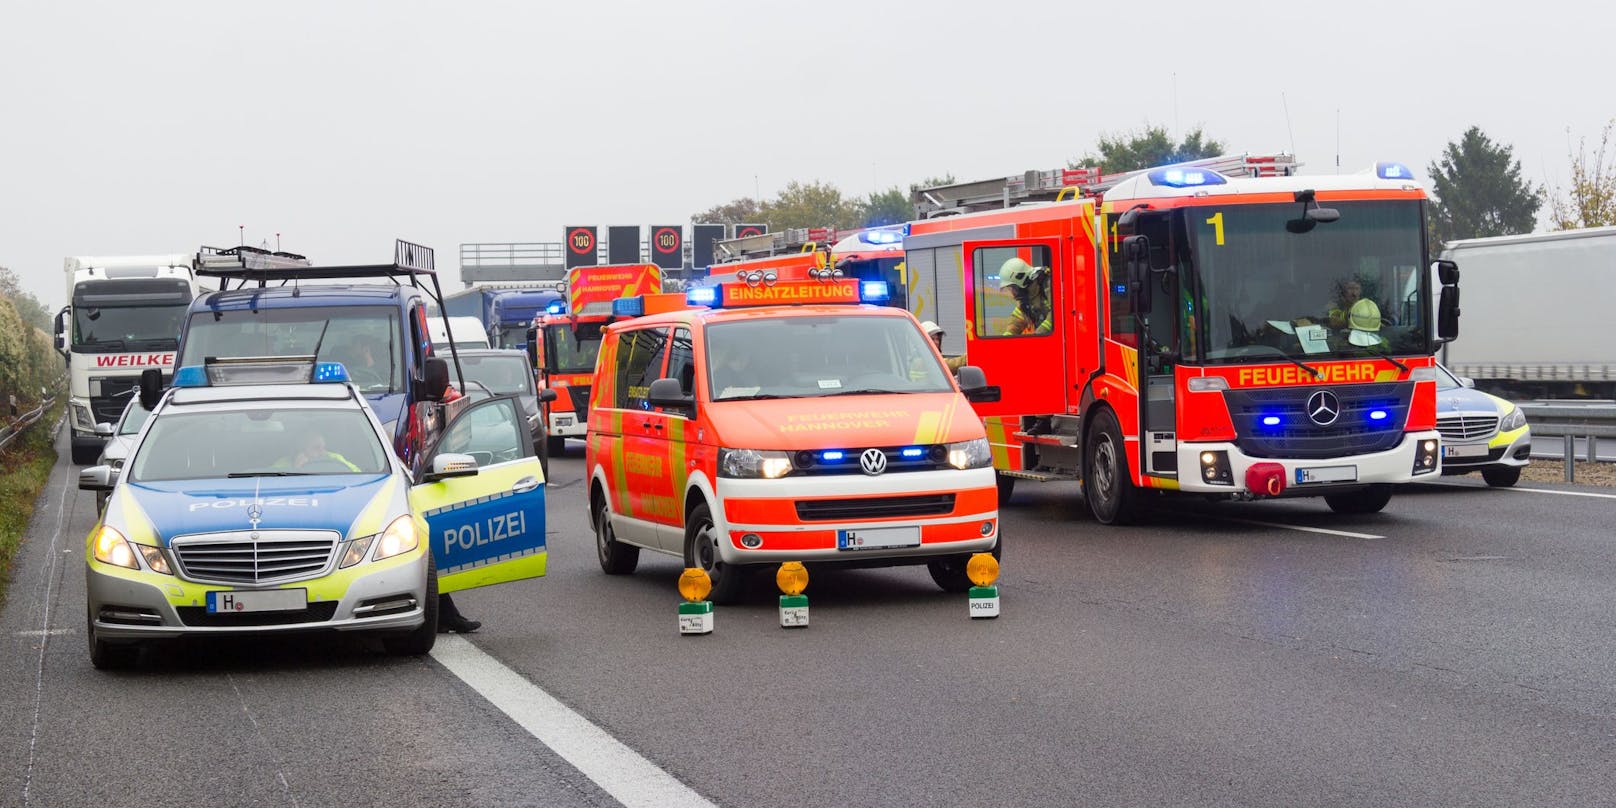 Auf der deutschen Autobahn kam es zu einem ungewöhnlichen Unfall, der glimpflich ausging. (Symbolbild)